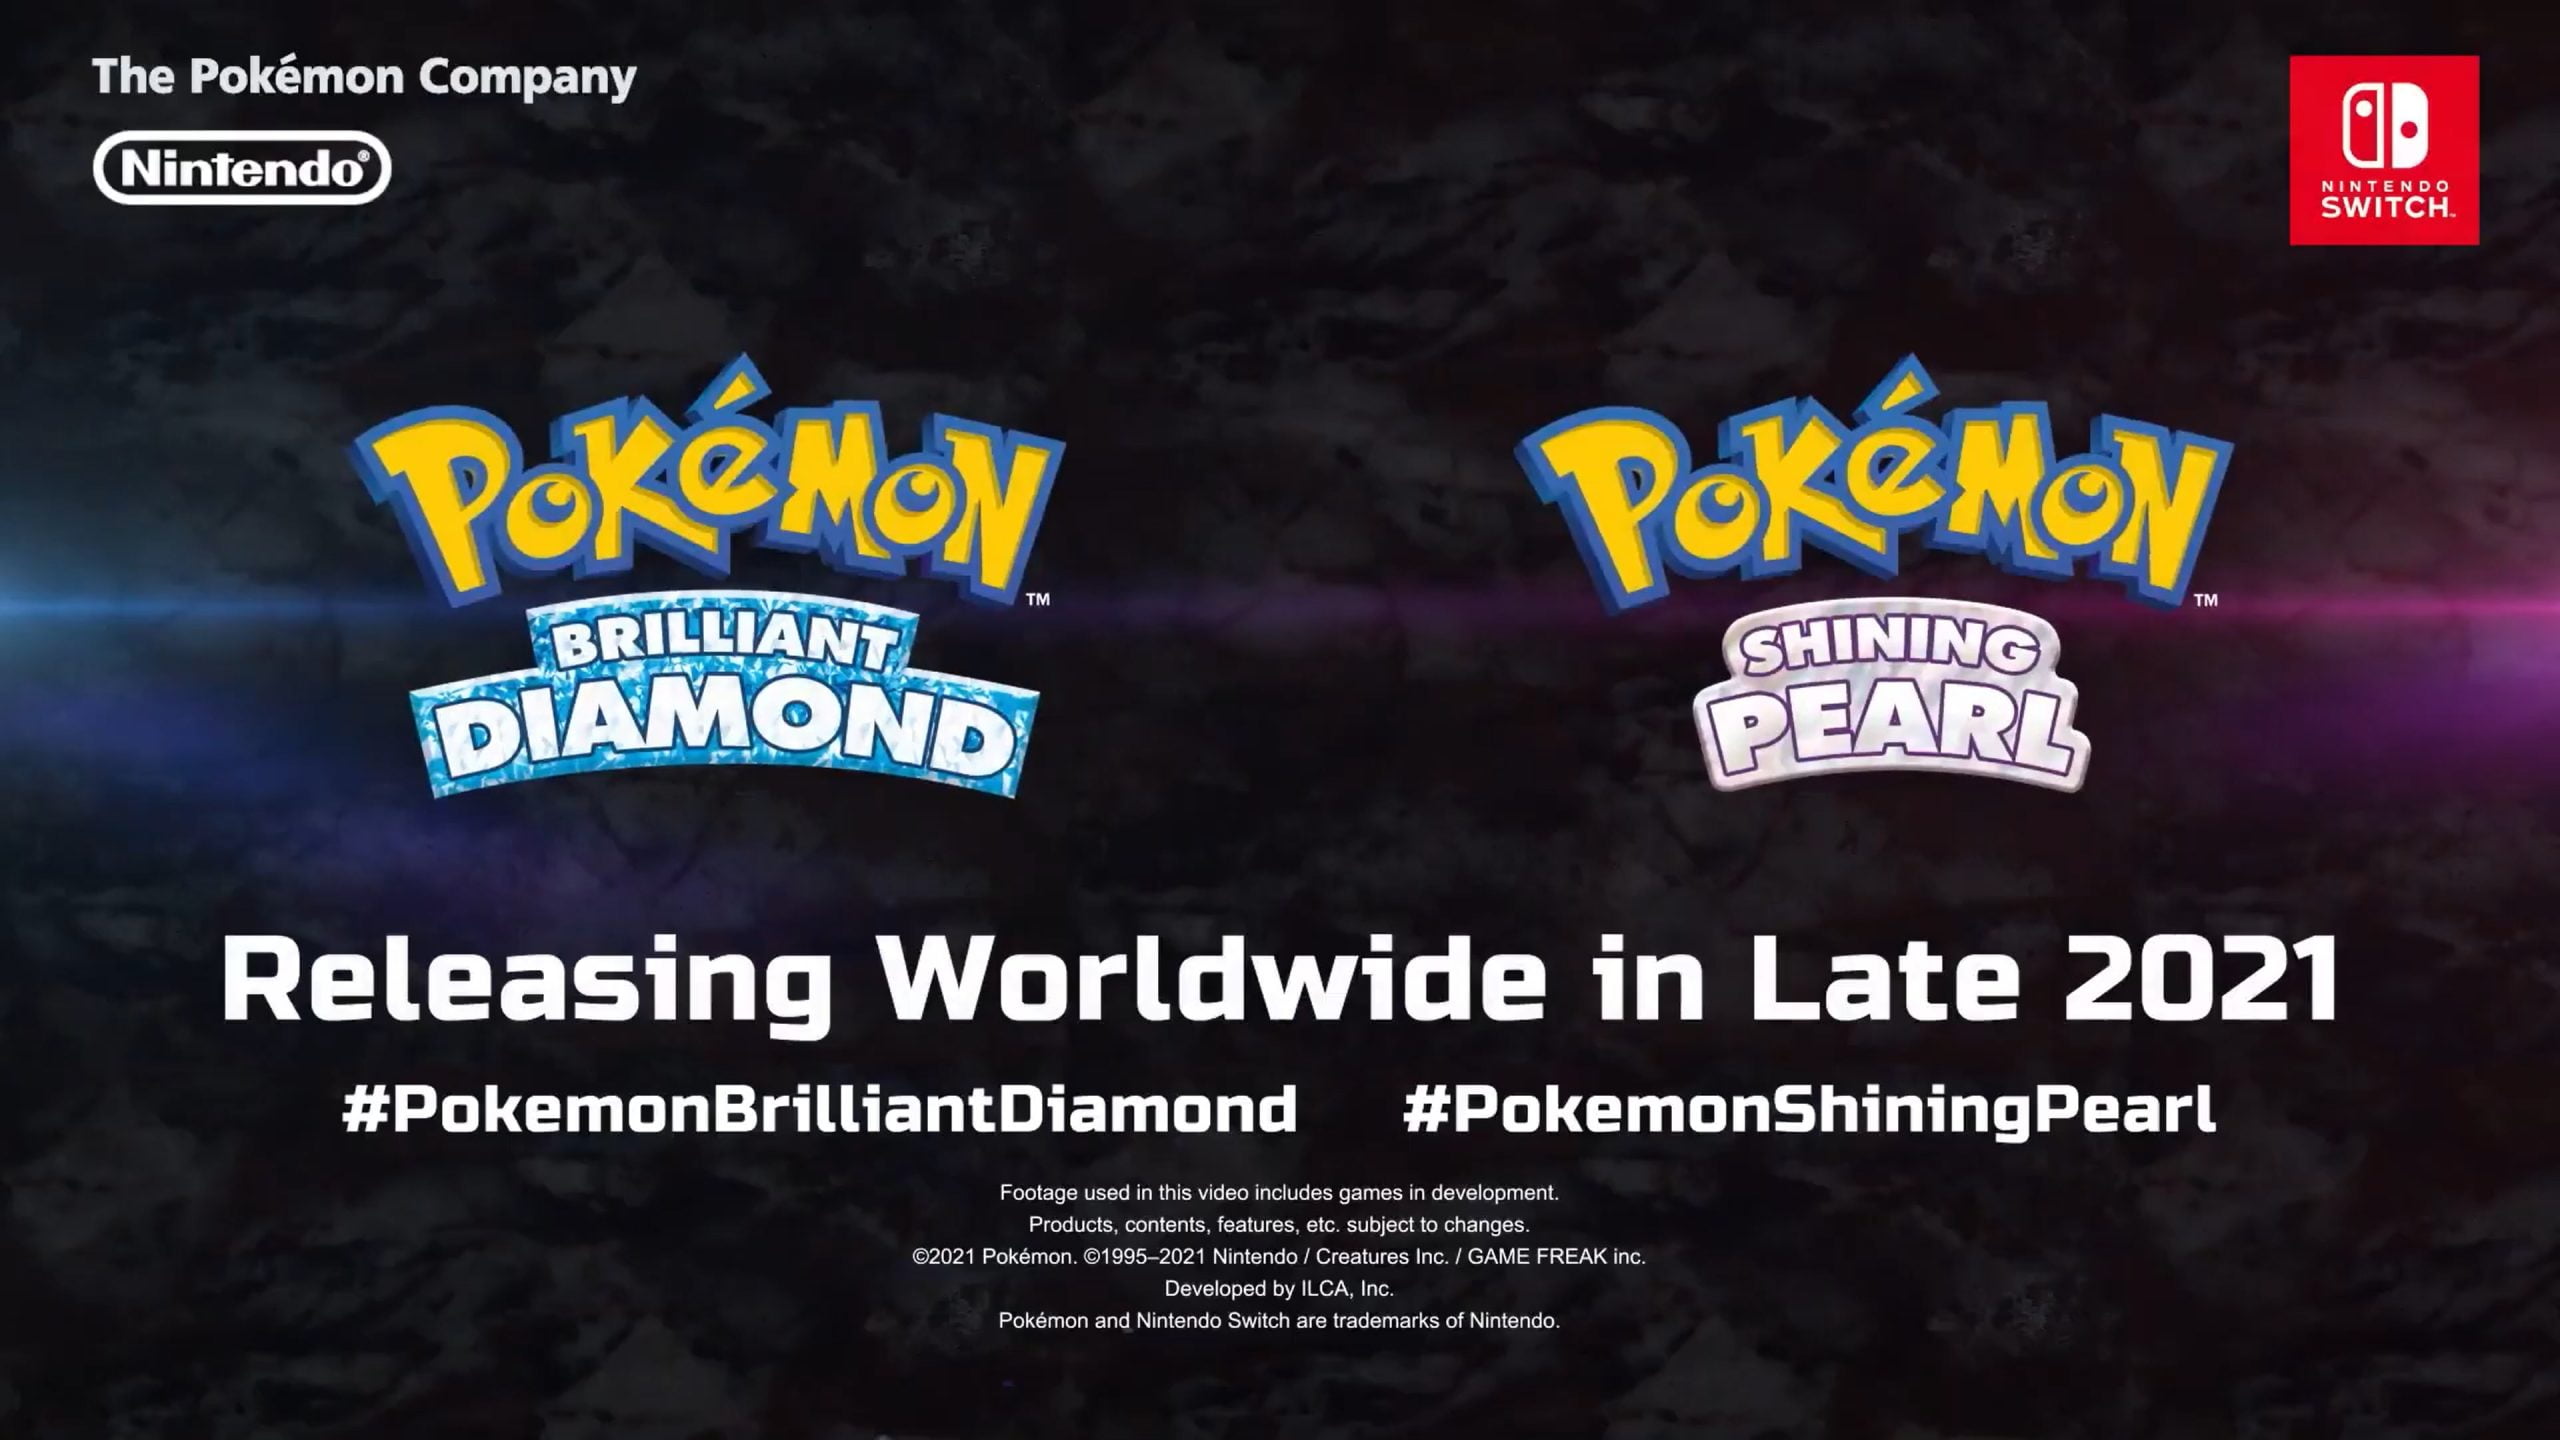 Imagem de divulgação com a logo de Pokémon Brilliant Diamond e Shining Pearl e anunciando a data de lançamento para o fim de 2021